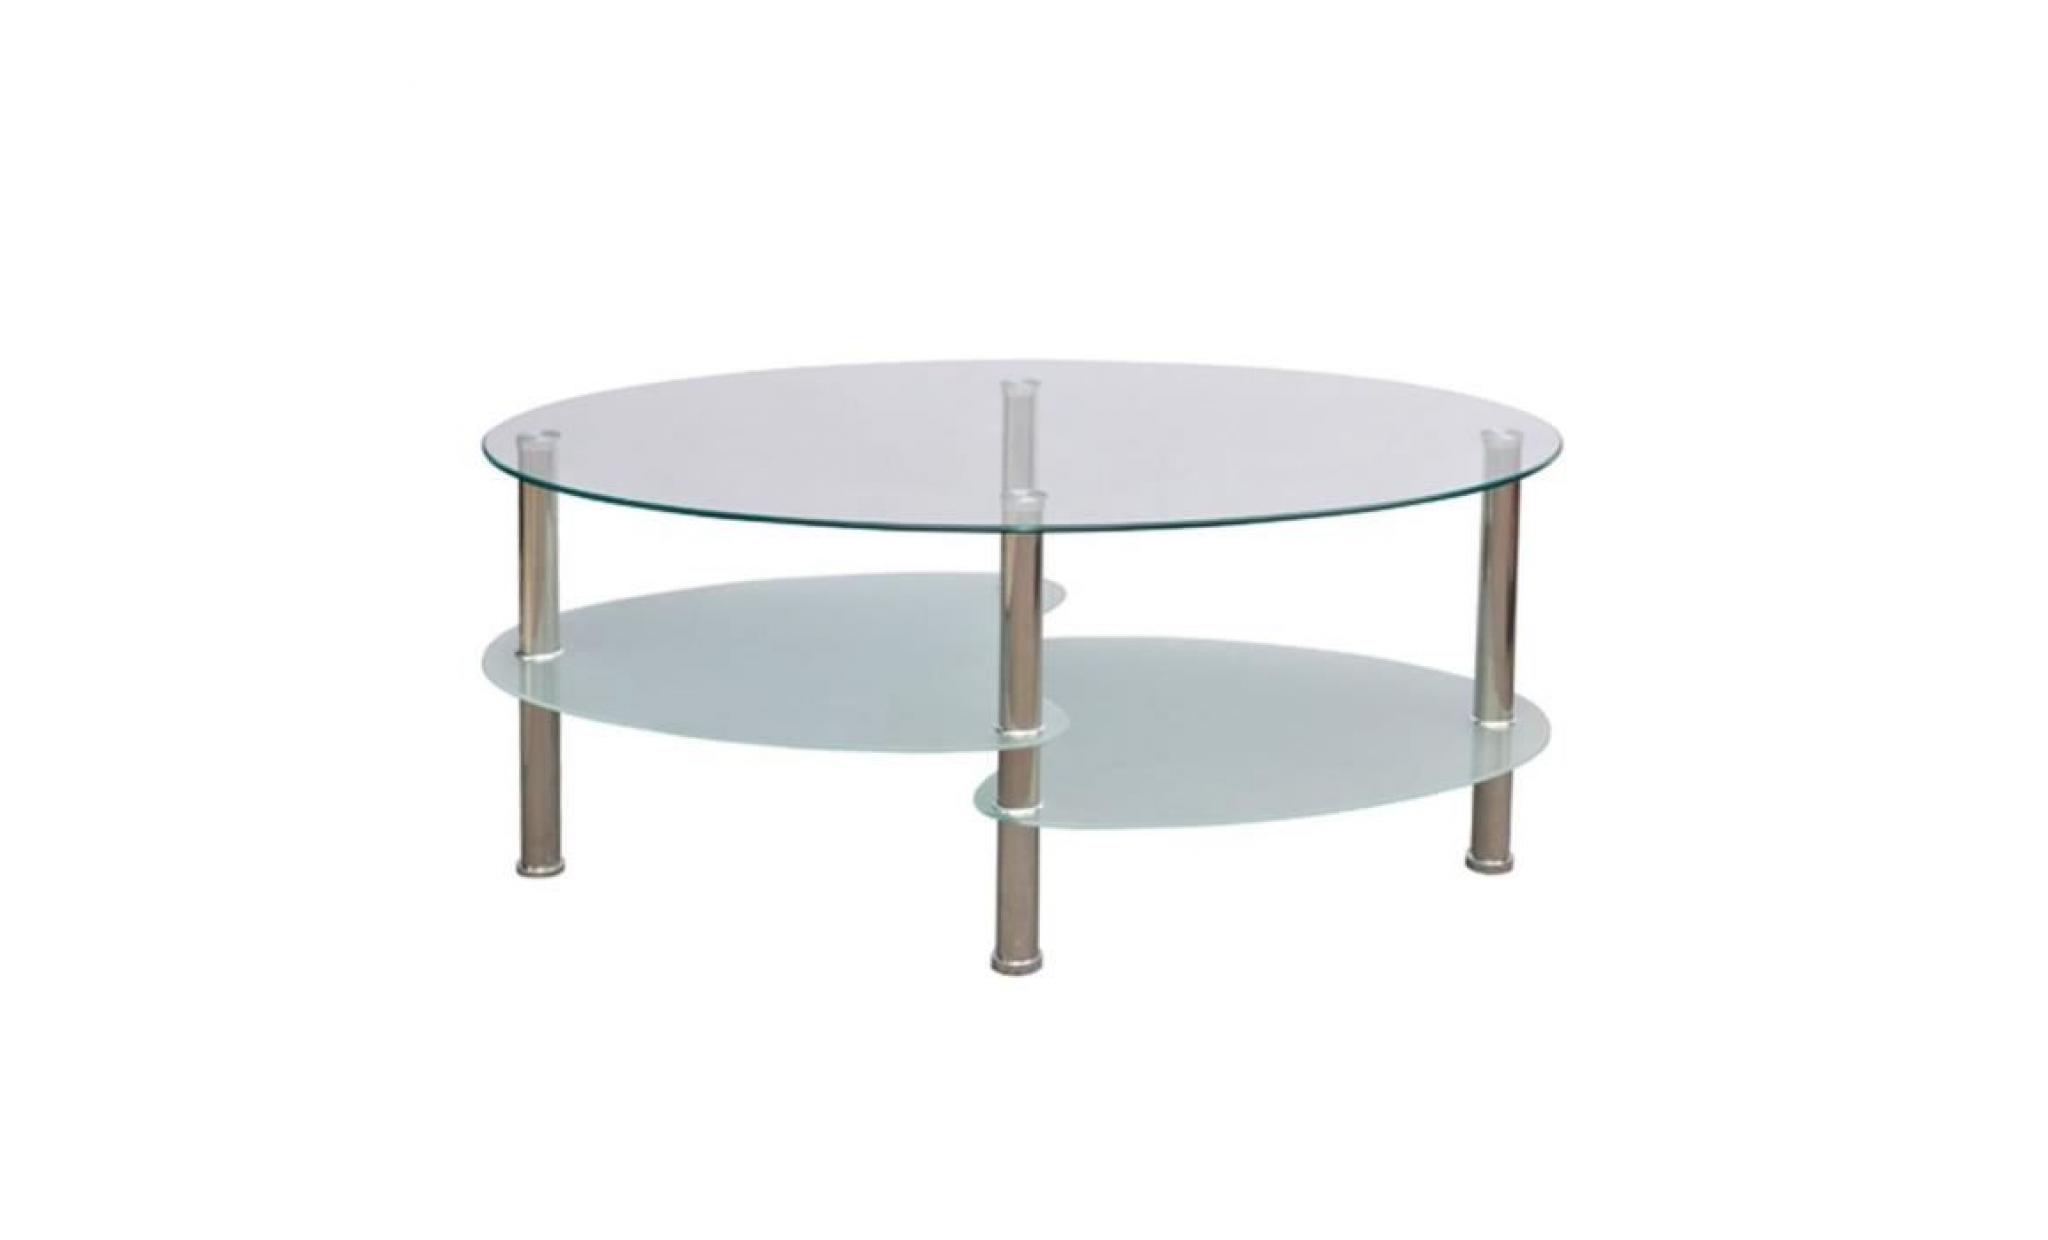 r84 cette belle table basse, dotee d'un design exclusif a 3 couches, creera une attraction visuelle a fort impact et ajo